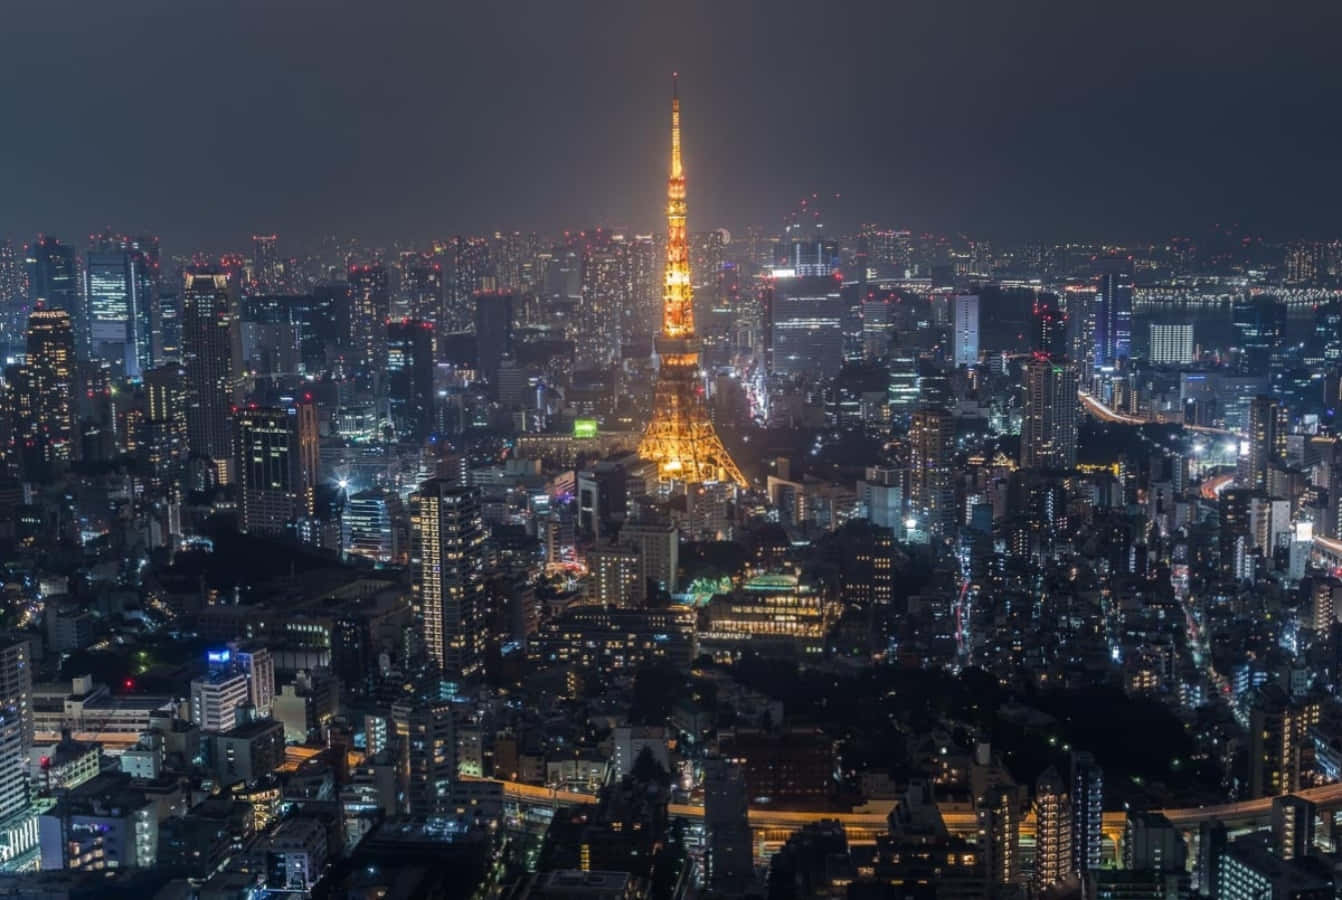 Diewunderschöne Skyline Von Tokyo, Japan, Mit Blick Auf Fuji Tv Im Hintergrund.